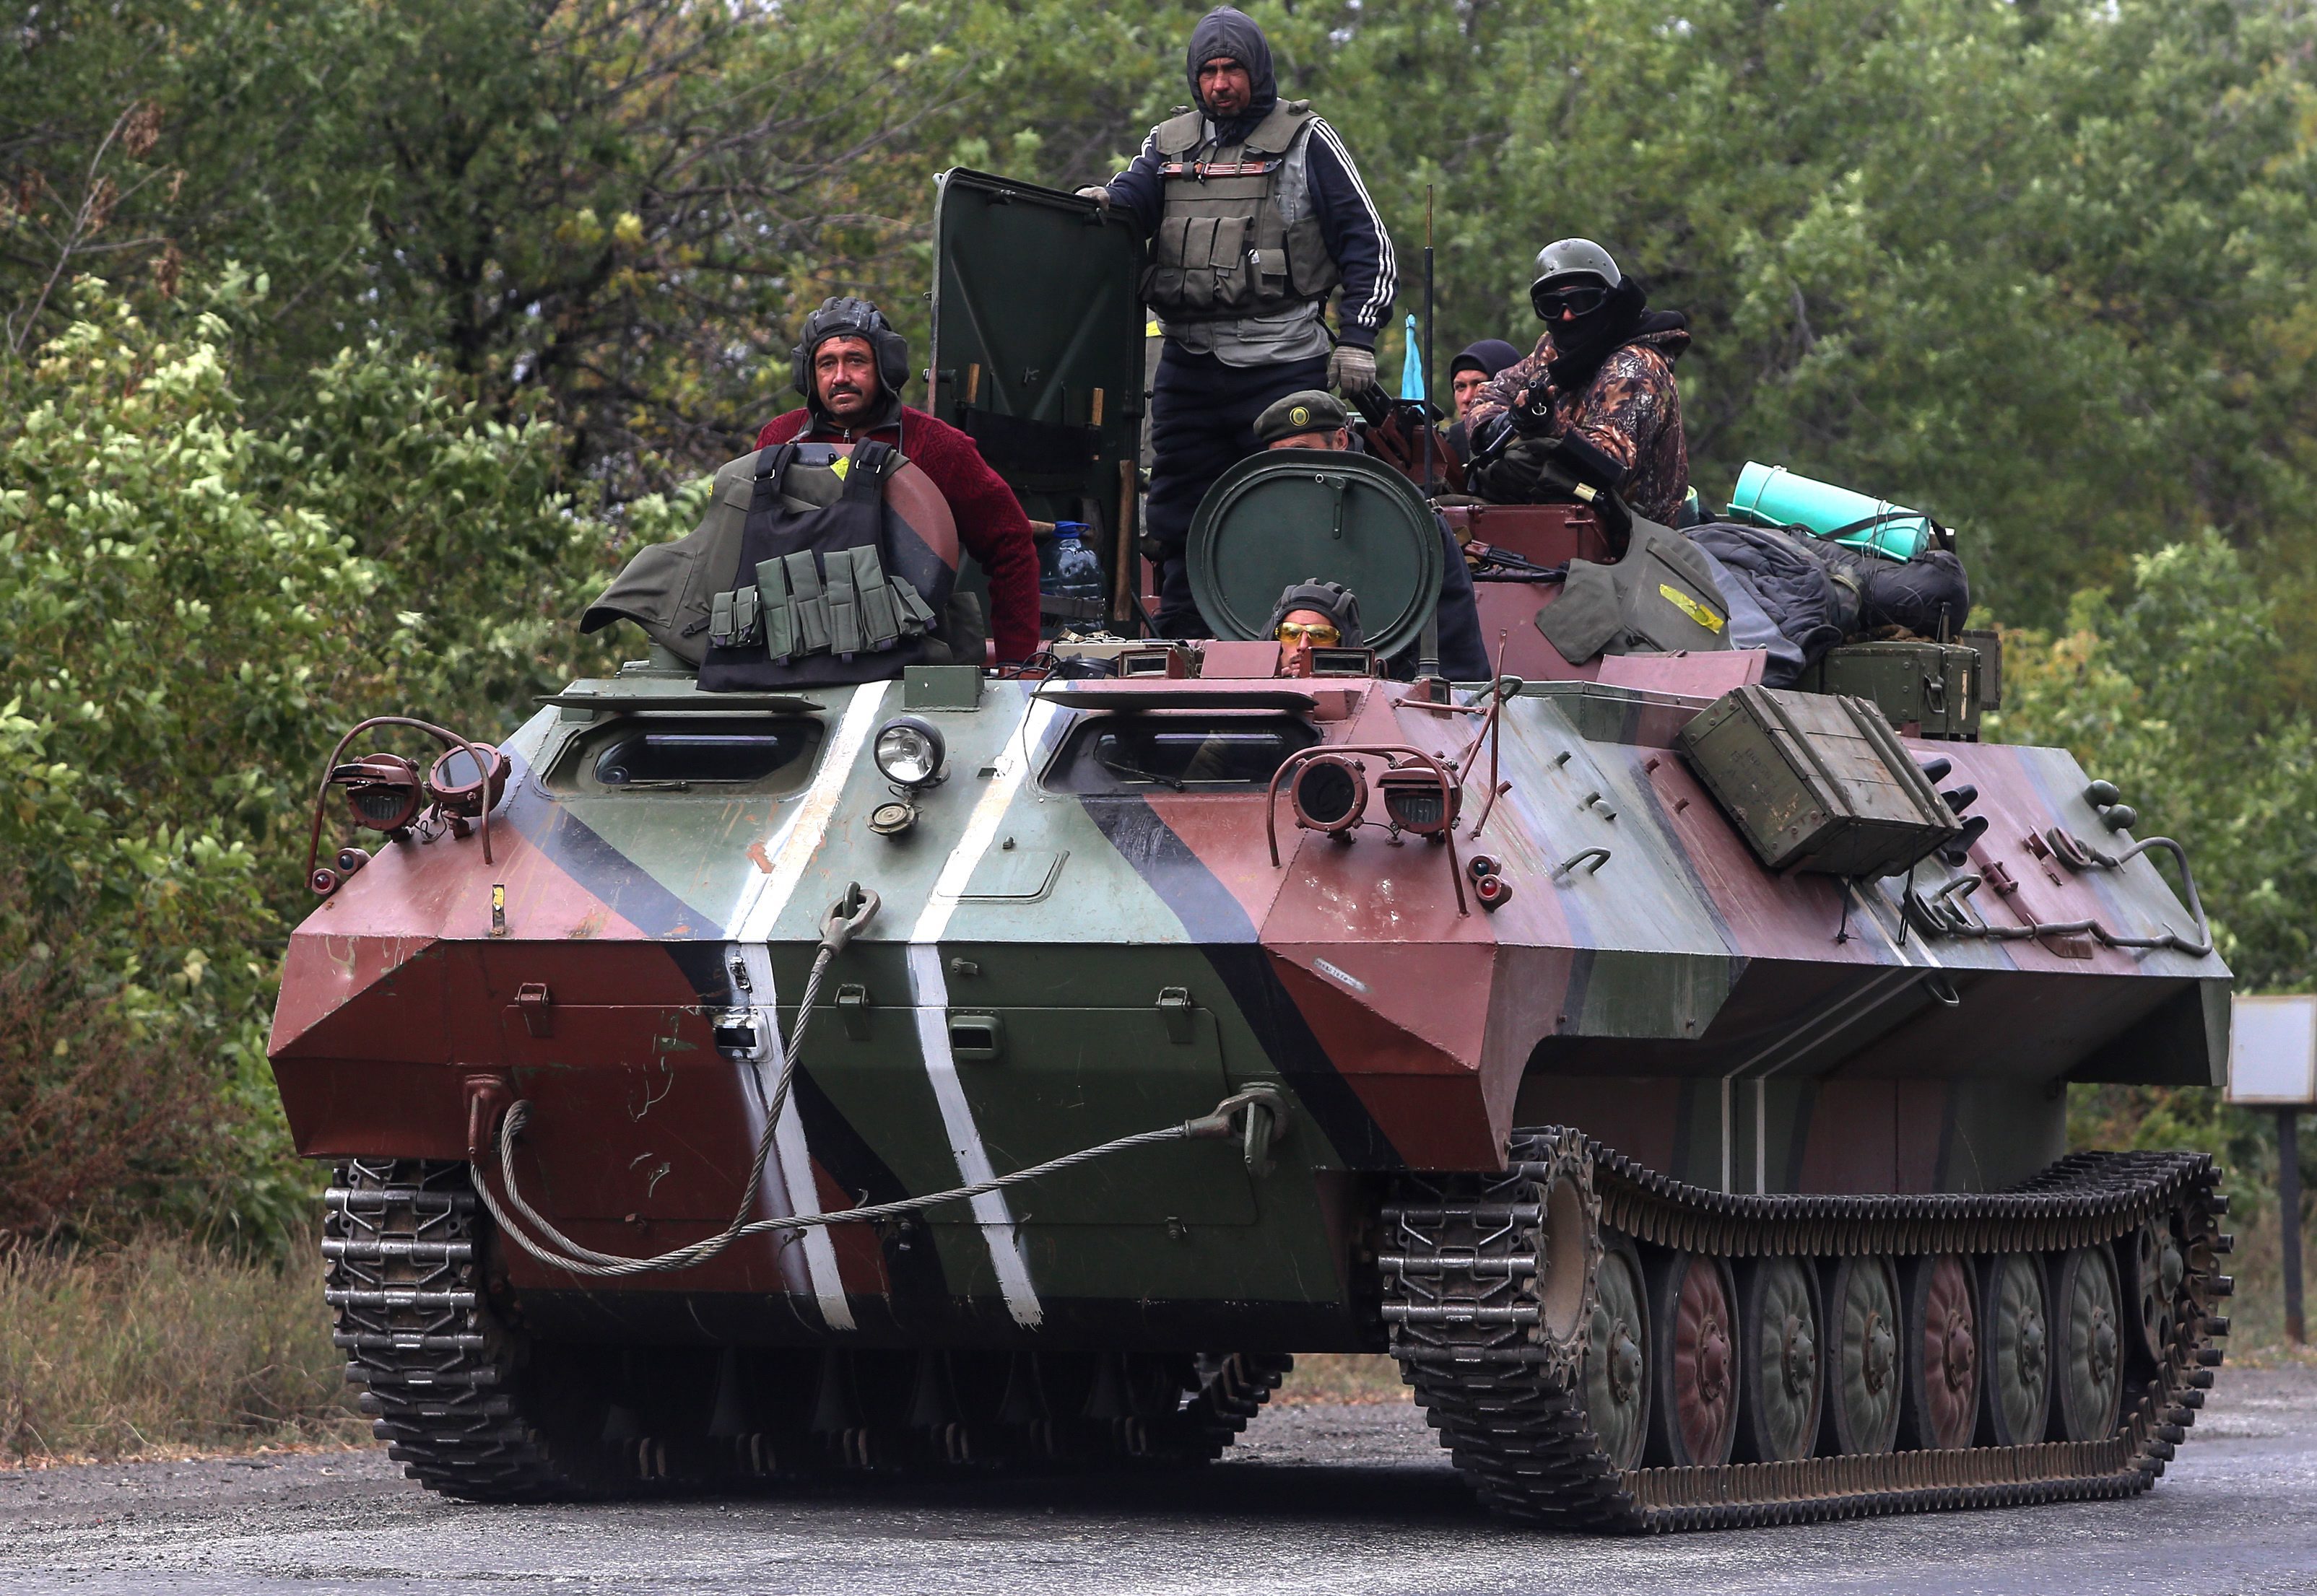 Ουκρανία: Οι φιλορώσοι αποσύρουν το πυροβολικό τους από τα ανατολικά